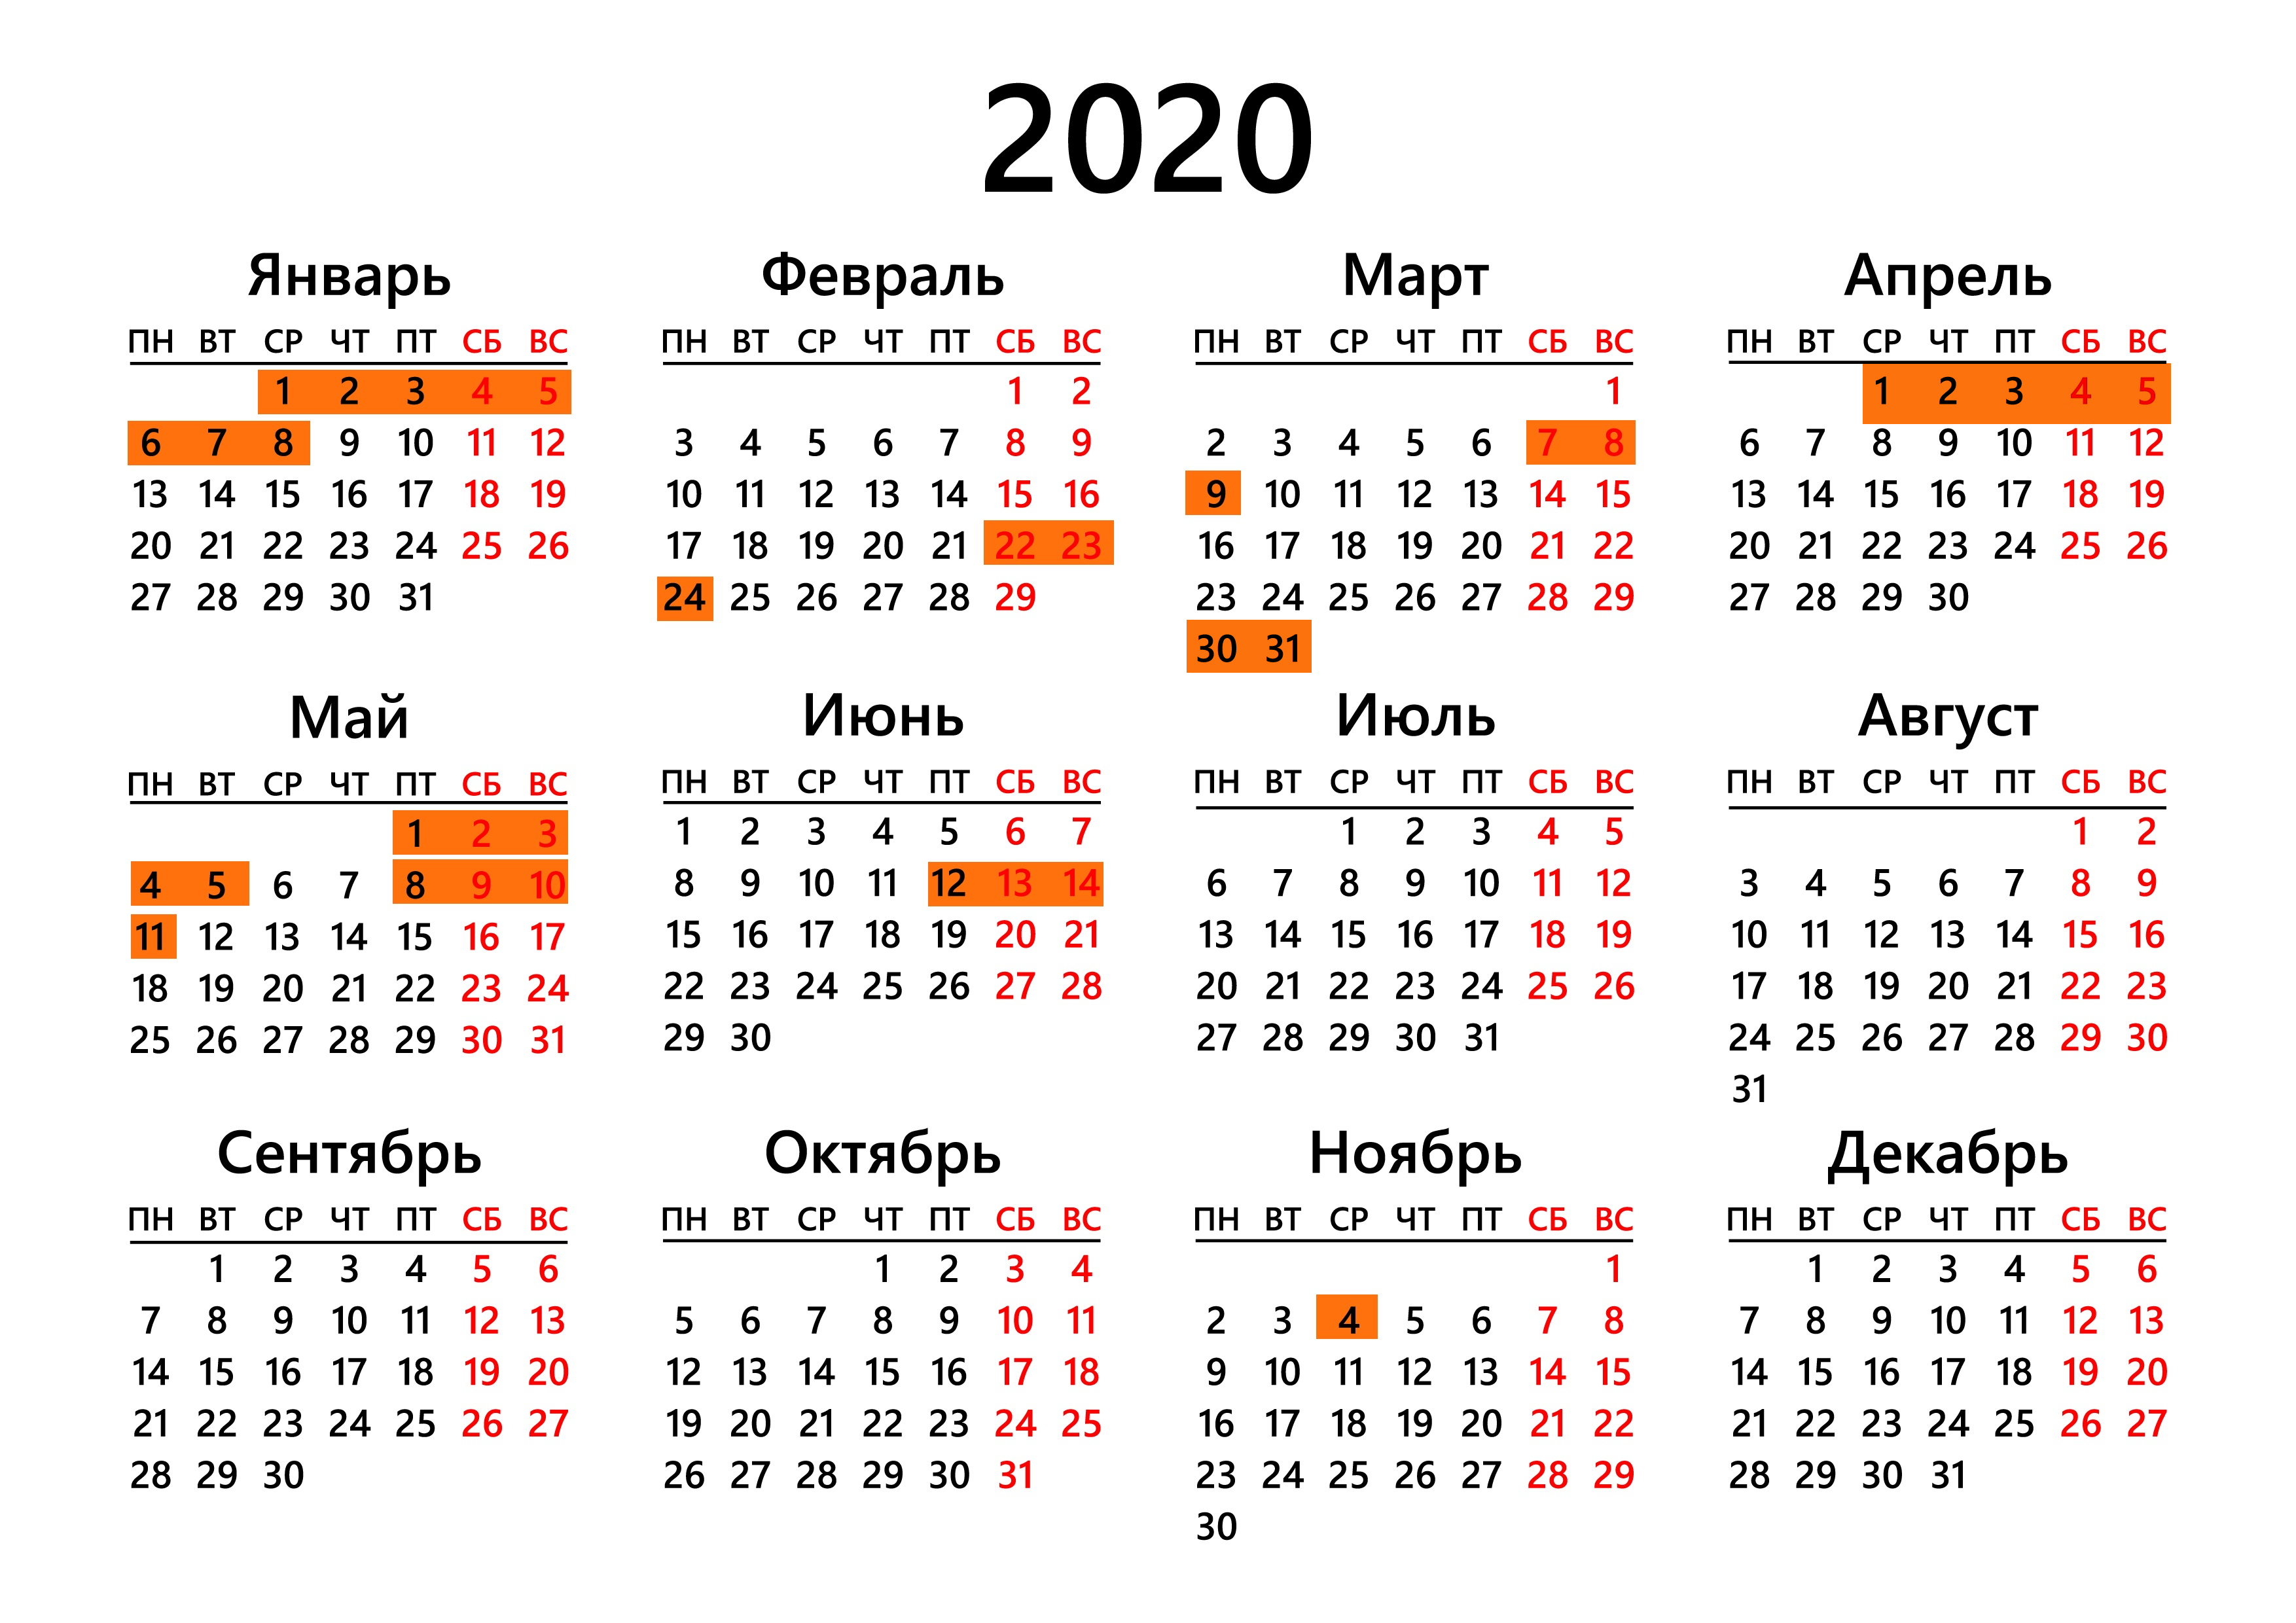 Календарь праздников и выходных дней в 2020 году - Тамбов Сегодня